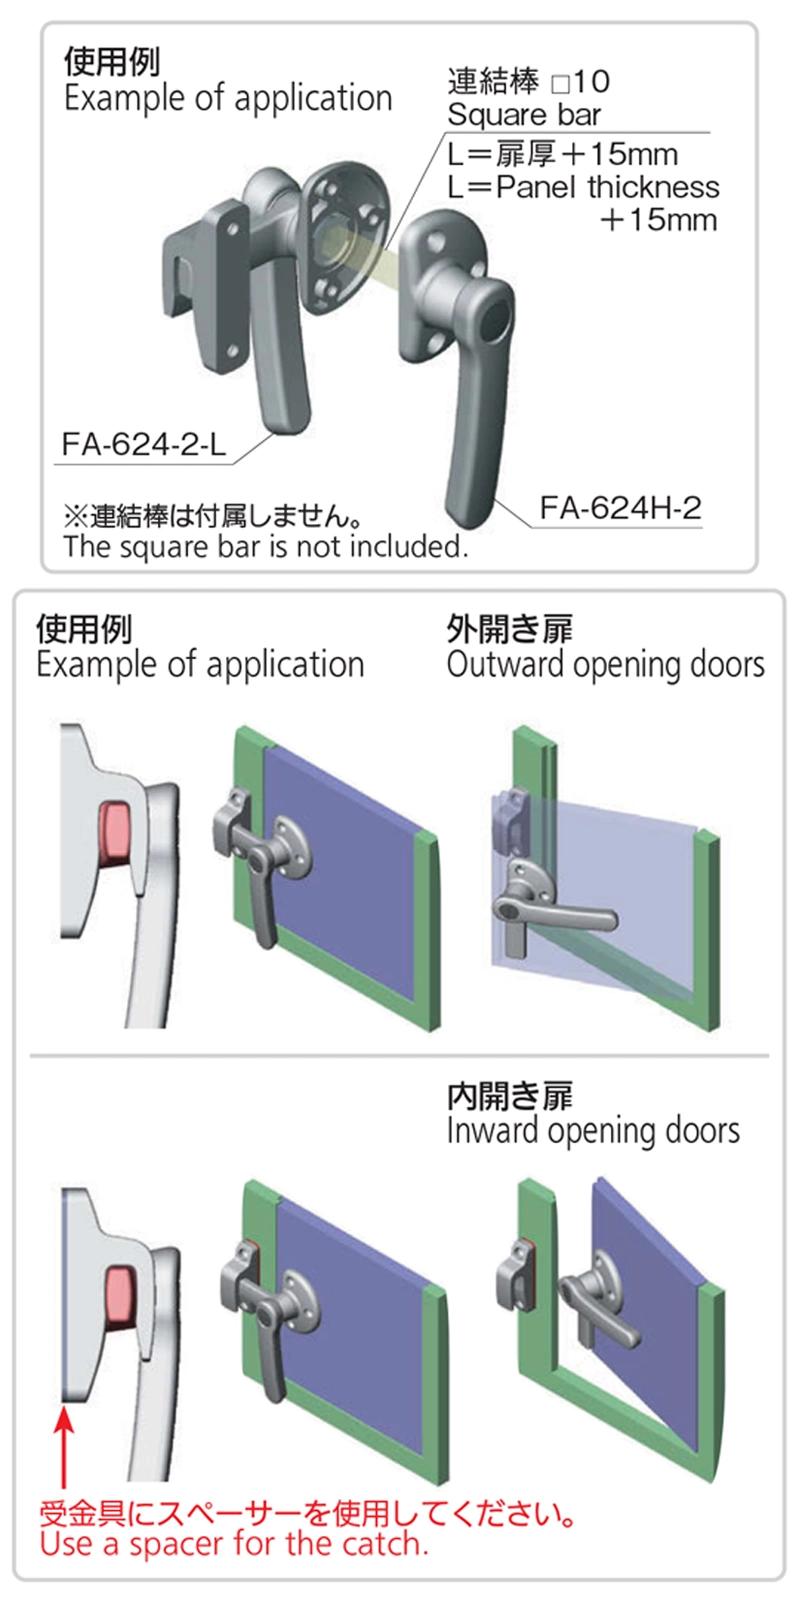 Japan Takigen Fa1624 Internal Sliding Door Single Side Turn Window Handles Lock Latch Bathroom